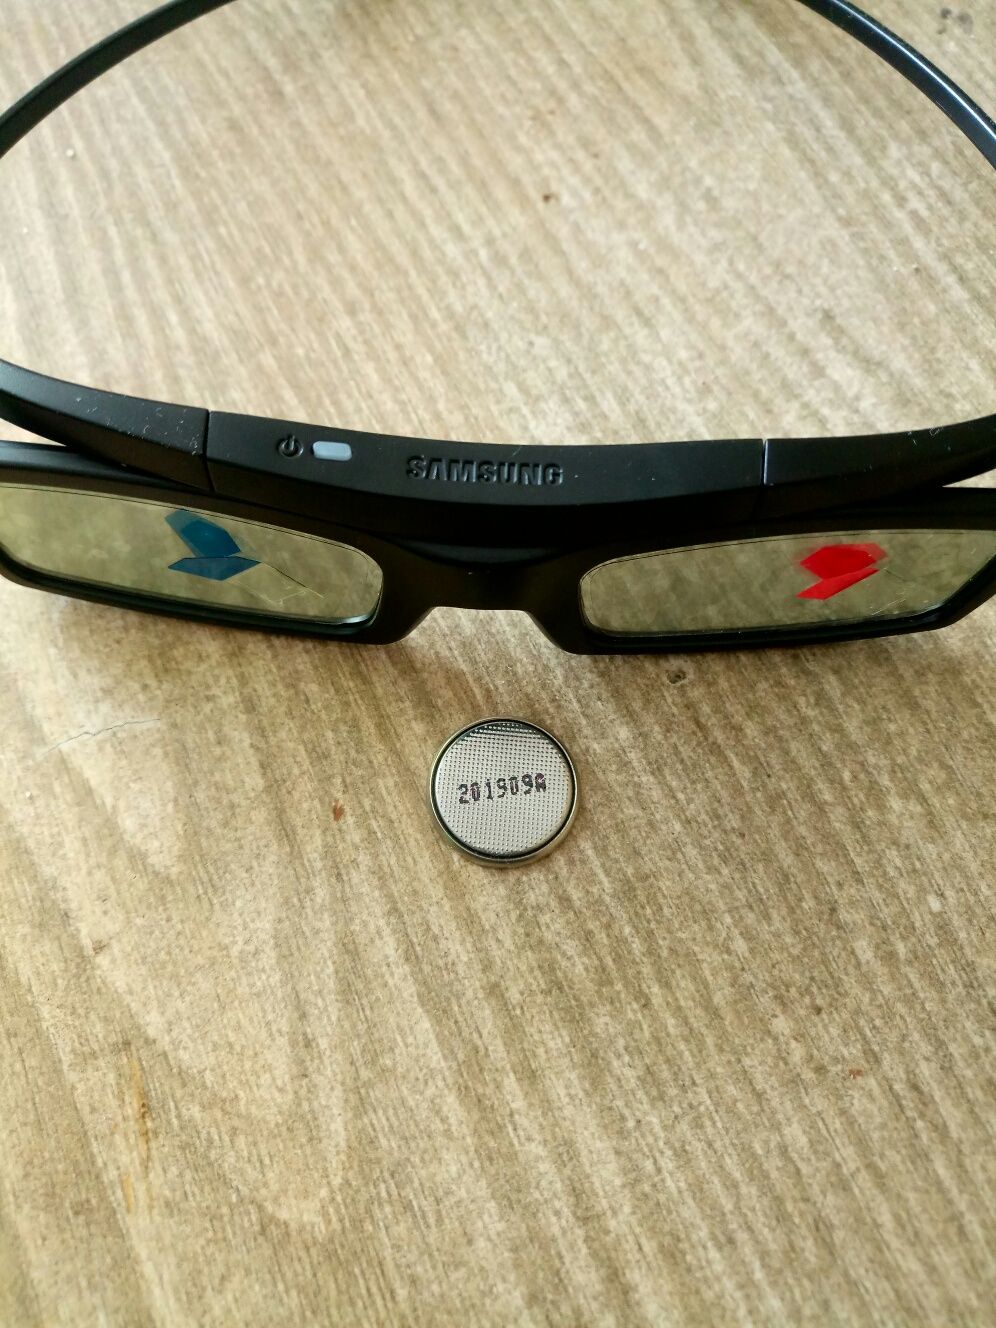 3D active Glasses SSG-5100GB